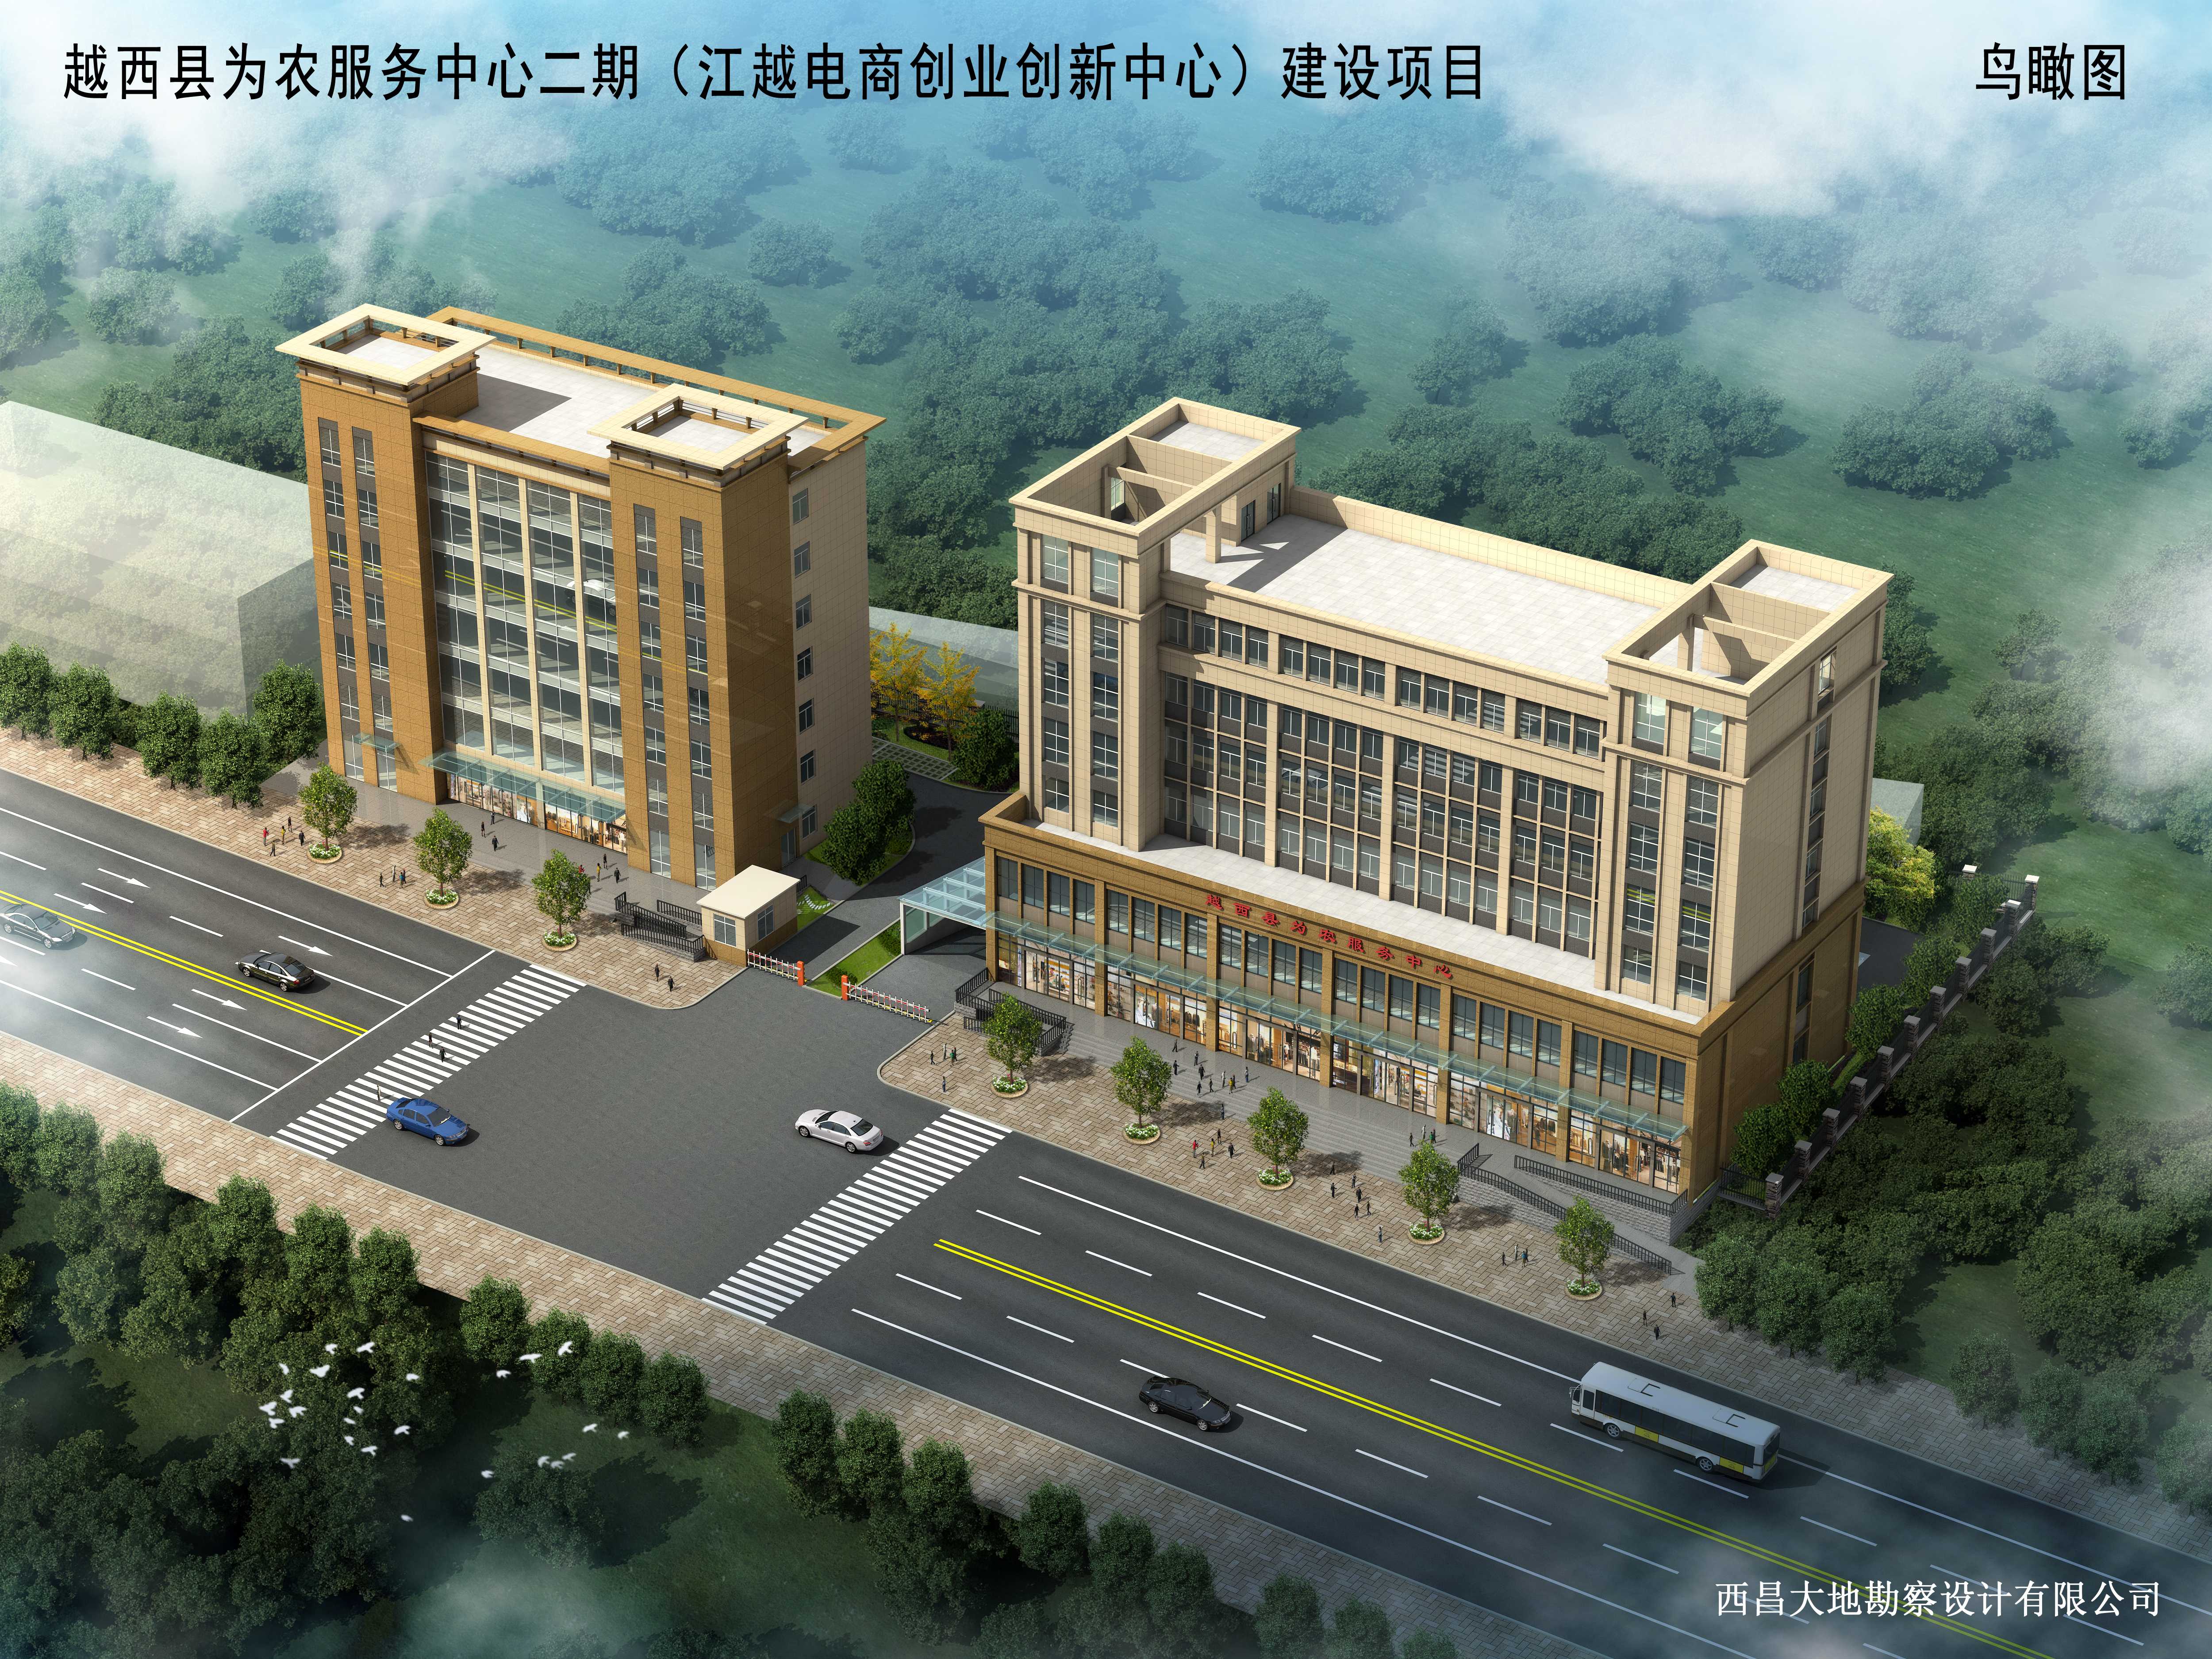 越西县为农服务中心二期（江越电商创业创新中心）建设项目